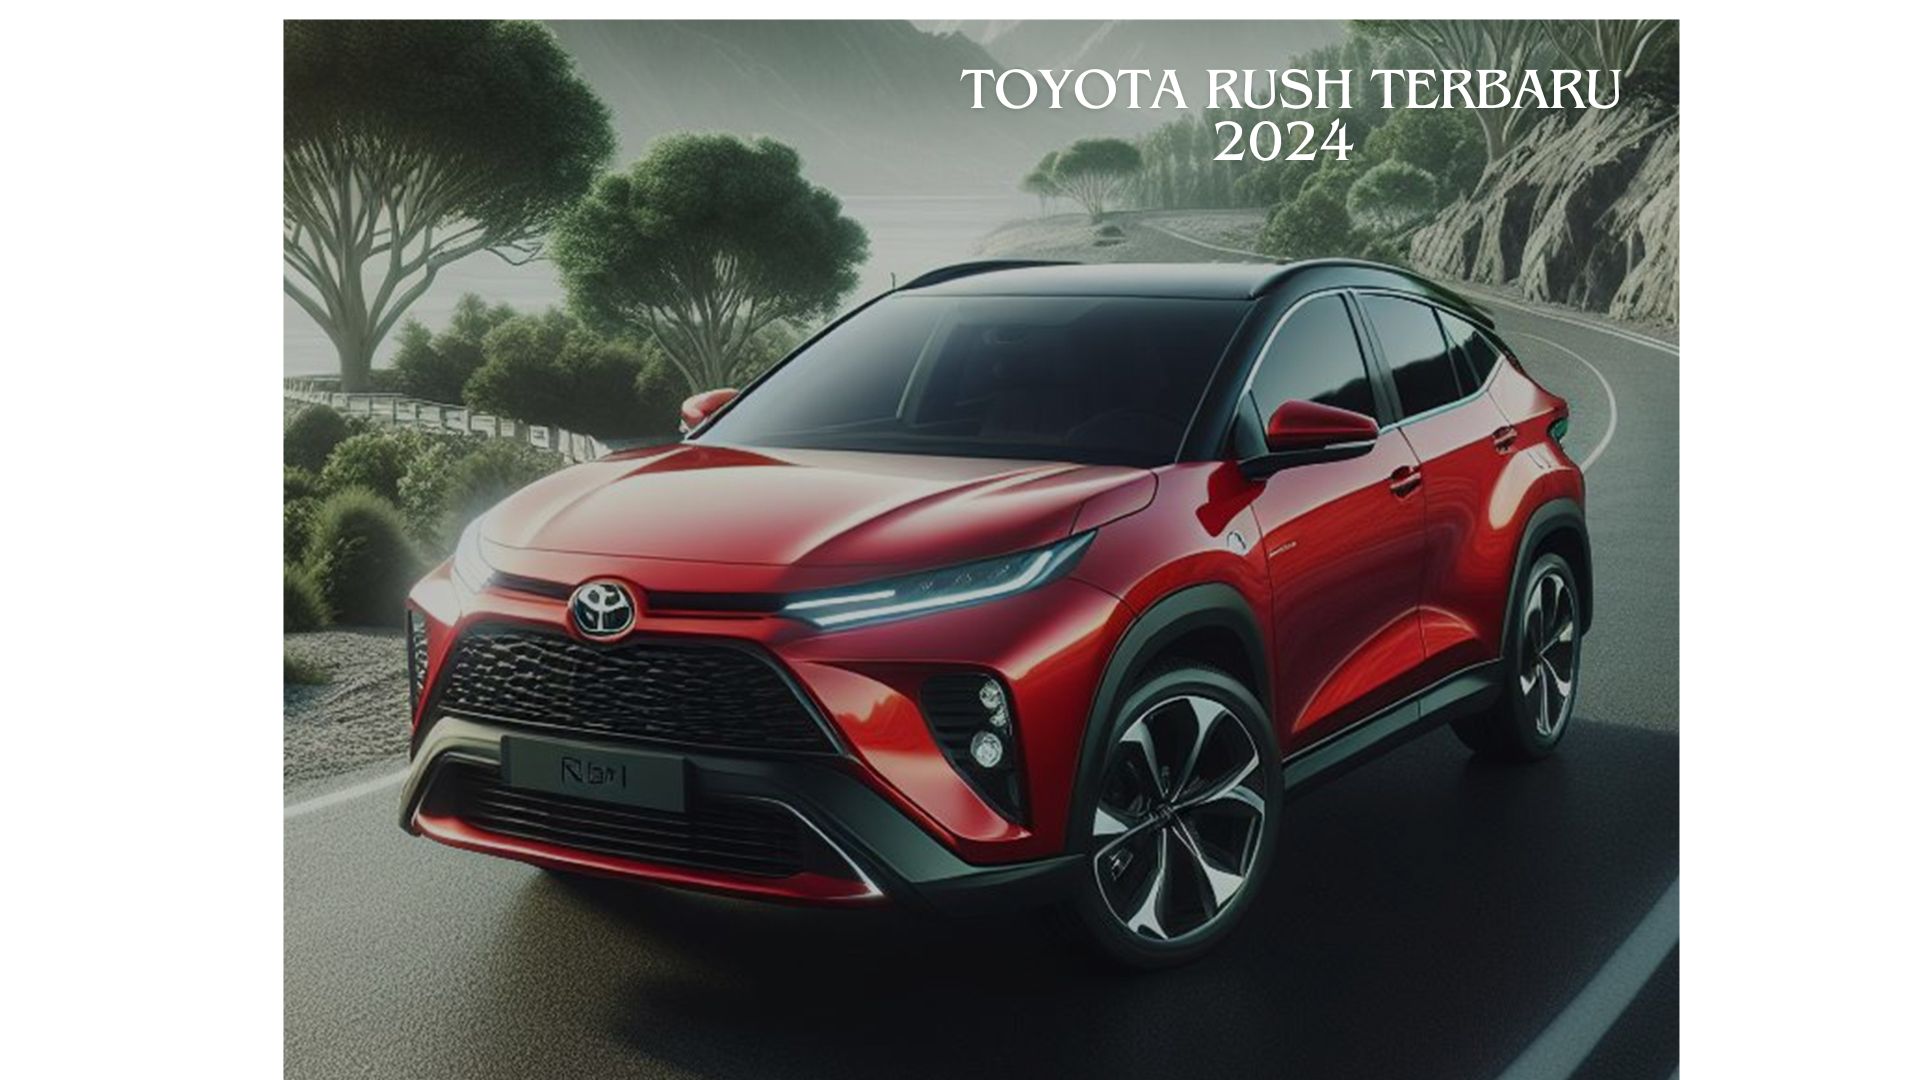 Selain Kabin yang Lega, Ini Deretan Keunggulan Toyota Rush Terbaru 2024 yang Harus Diketahui